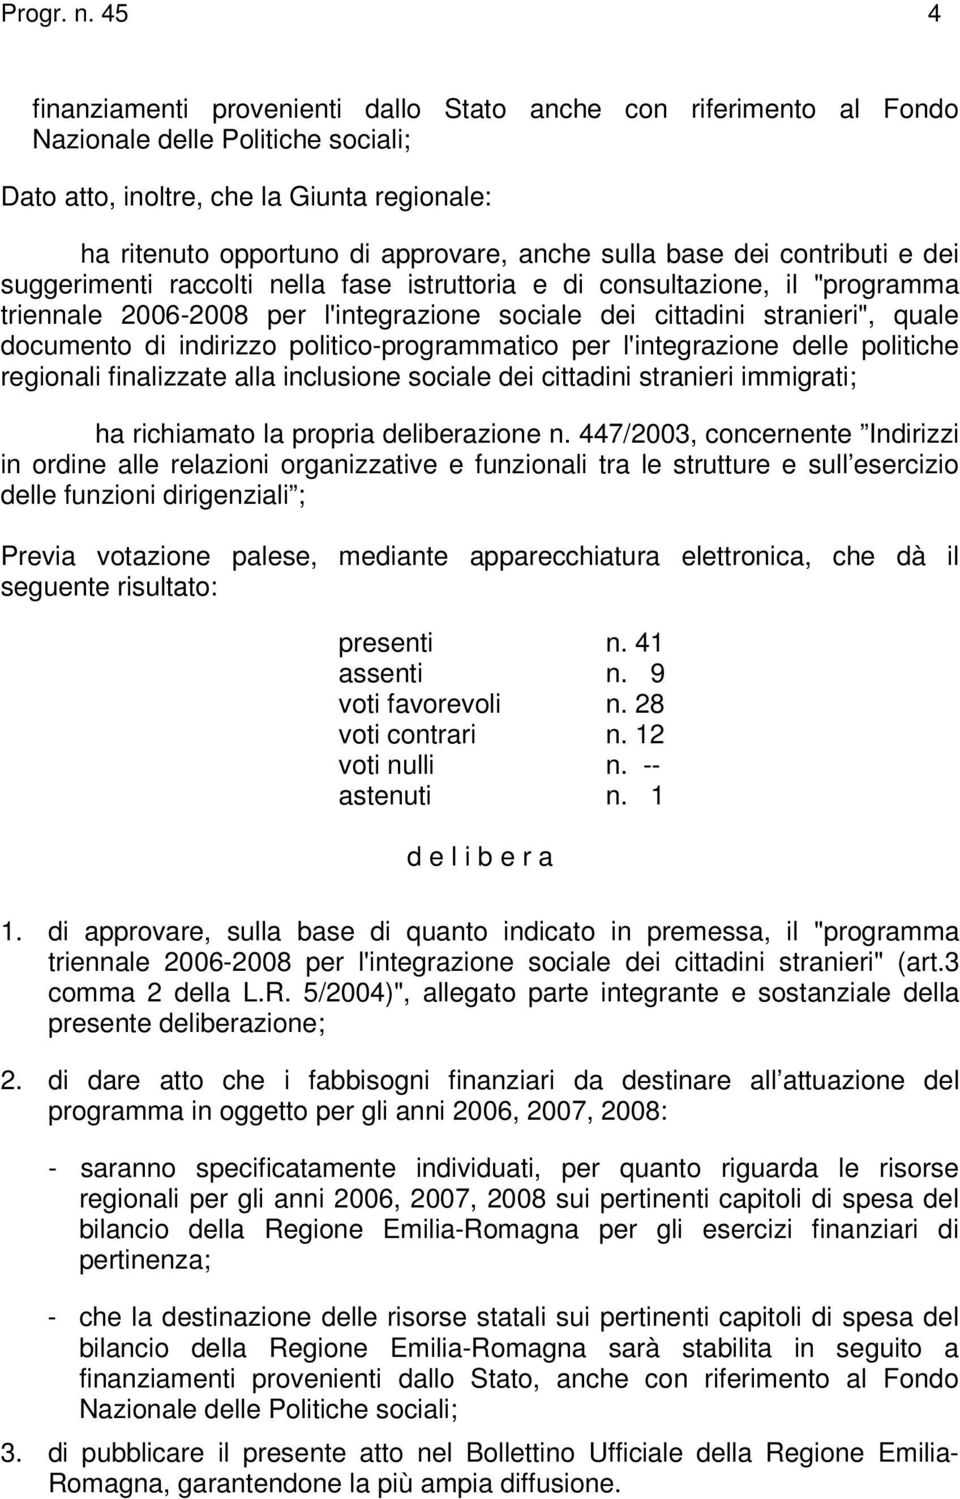 sulla base dei contributi e dei suggerimenti raccolti nella fase istruttoria e di consultazione, il "programma triennale 2006-2008 per l'integrazione sociale dei cittadini stranieri", quale documento